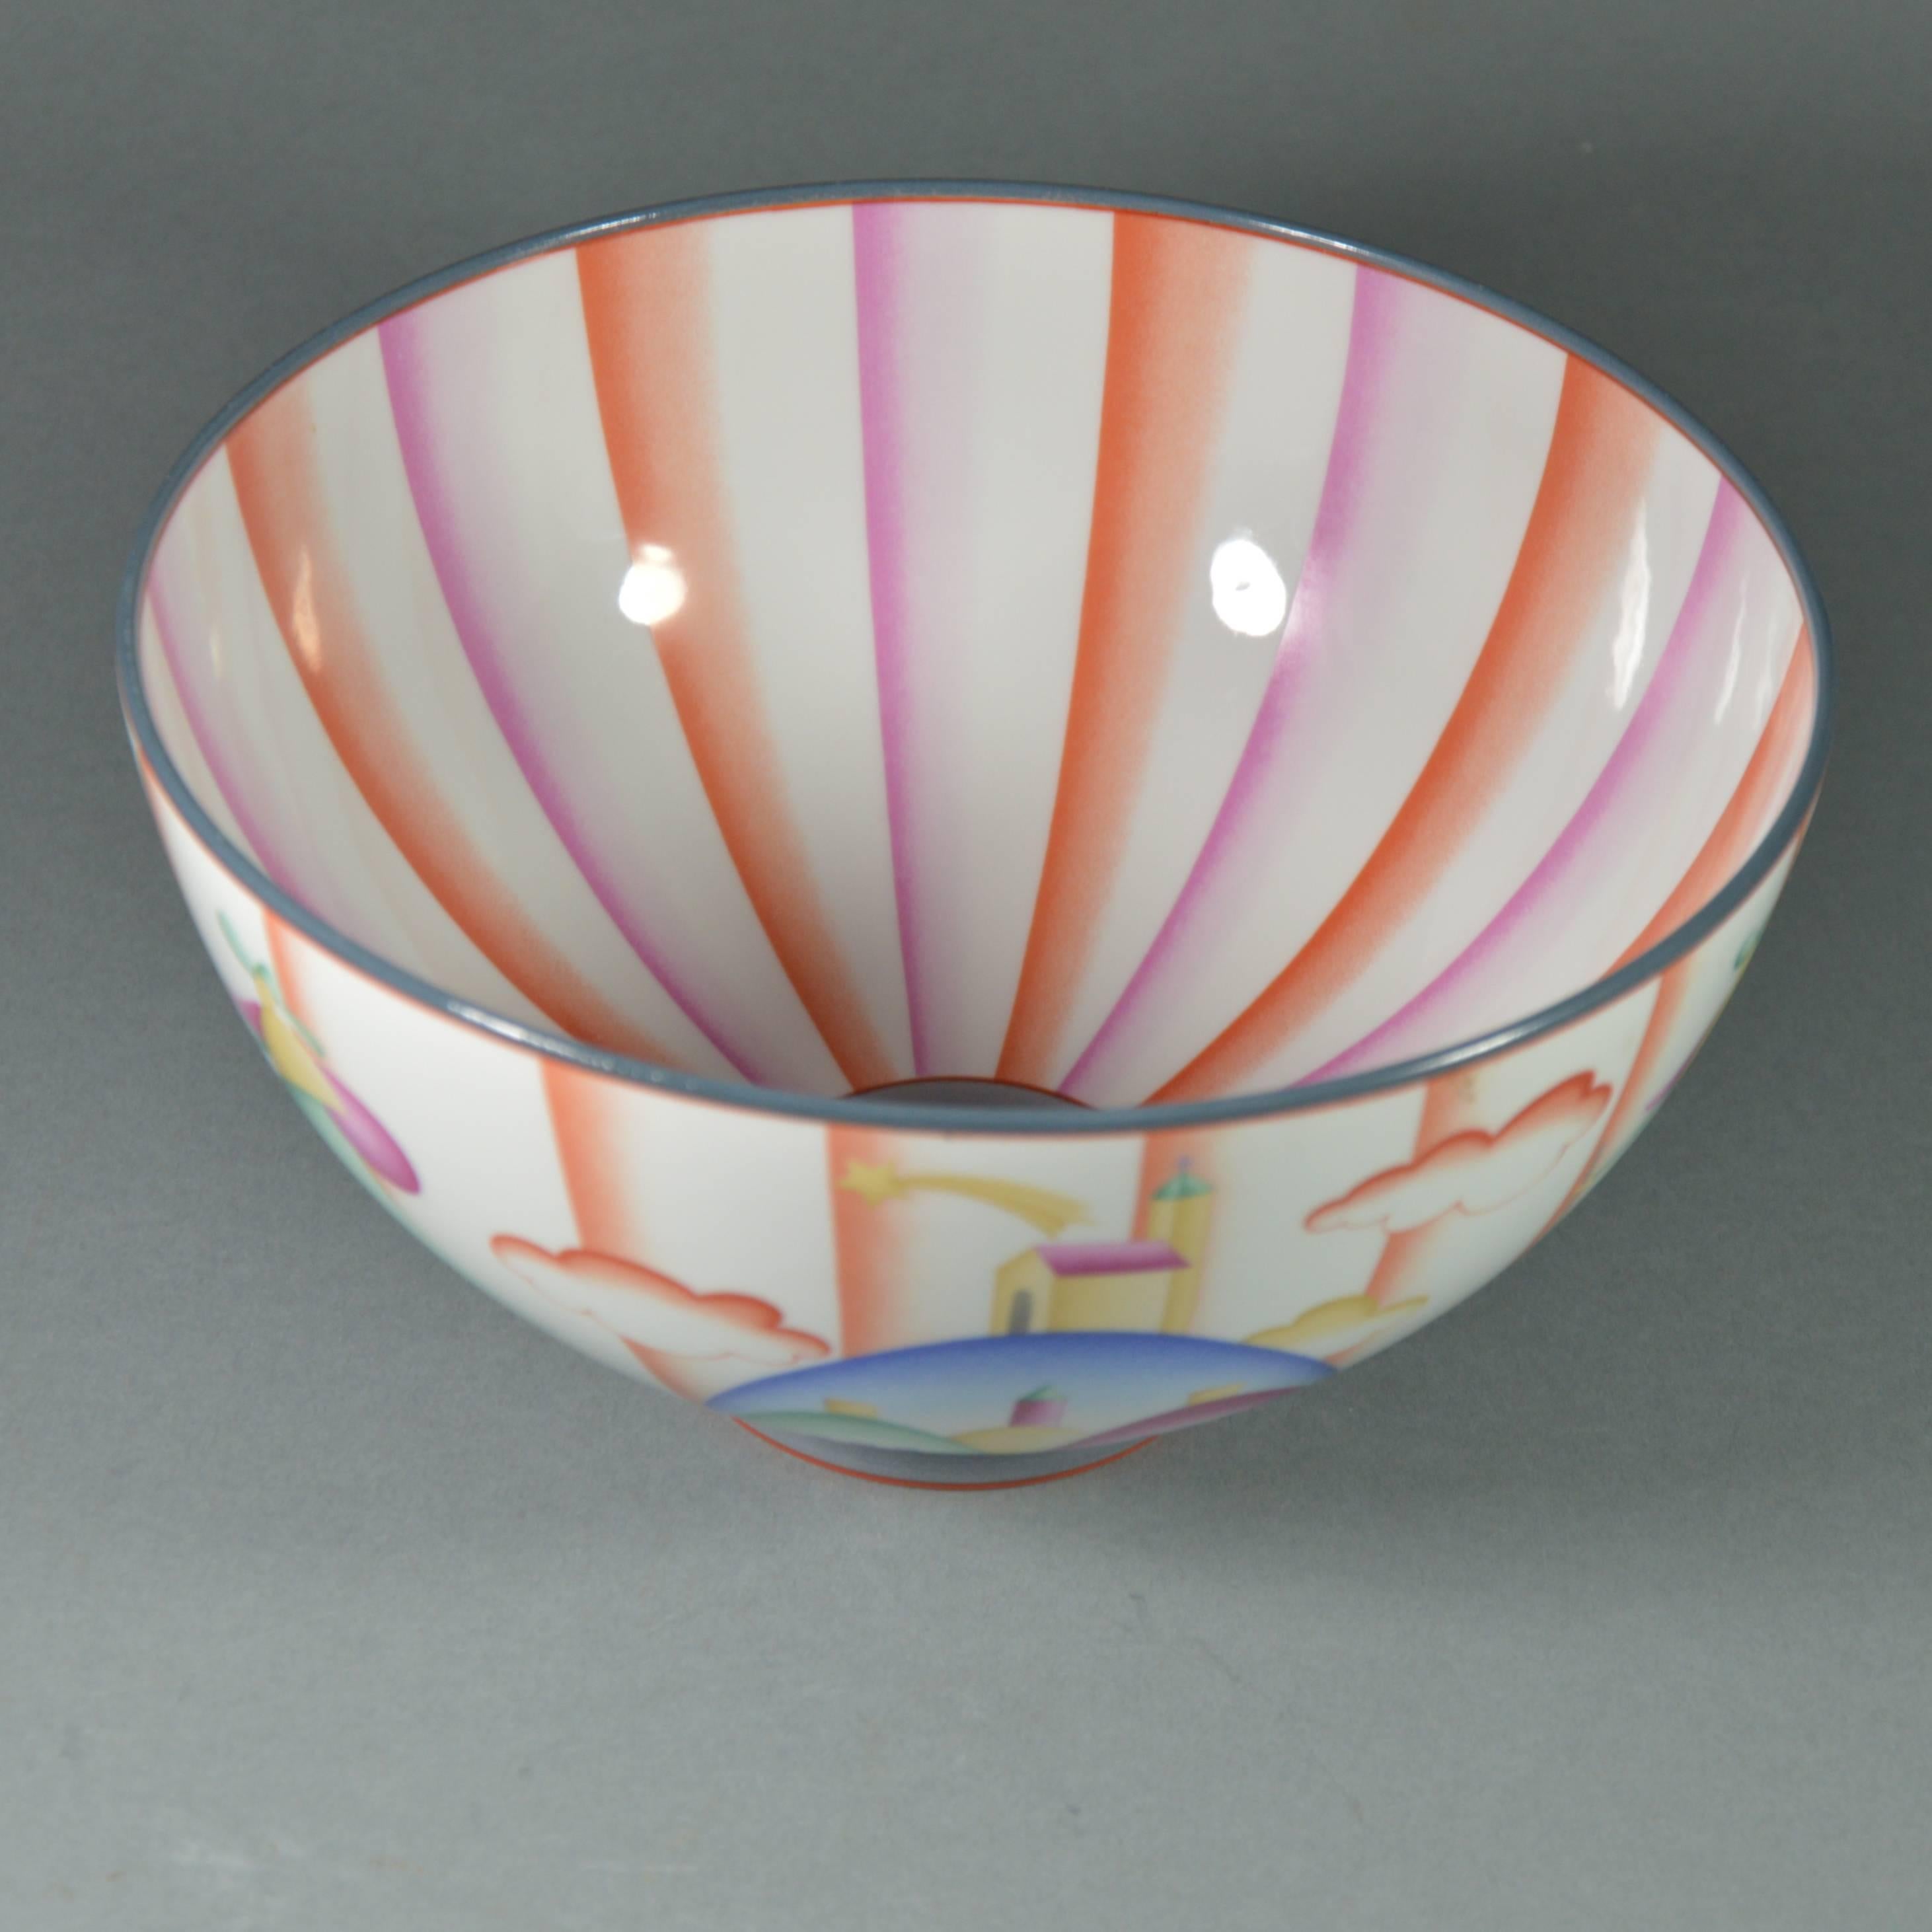 Early 20th Century Gio Ponti Art Deco Porcelain Bowl Il Pellegrino di Montesanto, 1925 For Sale